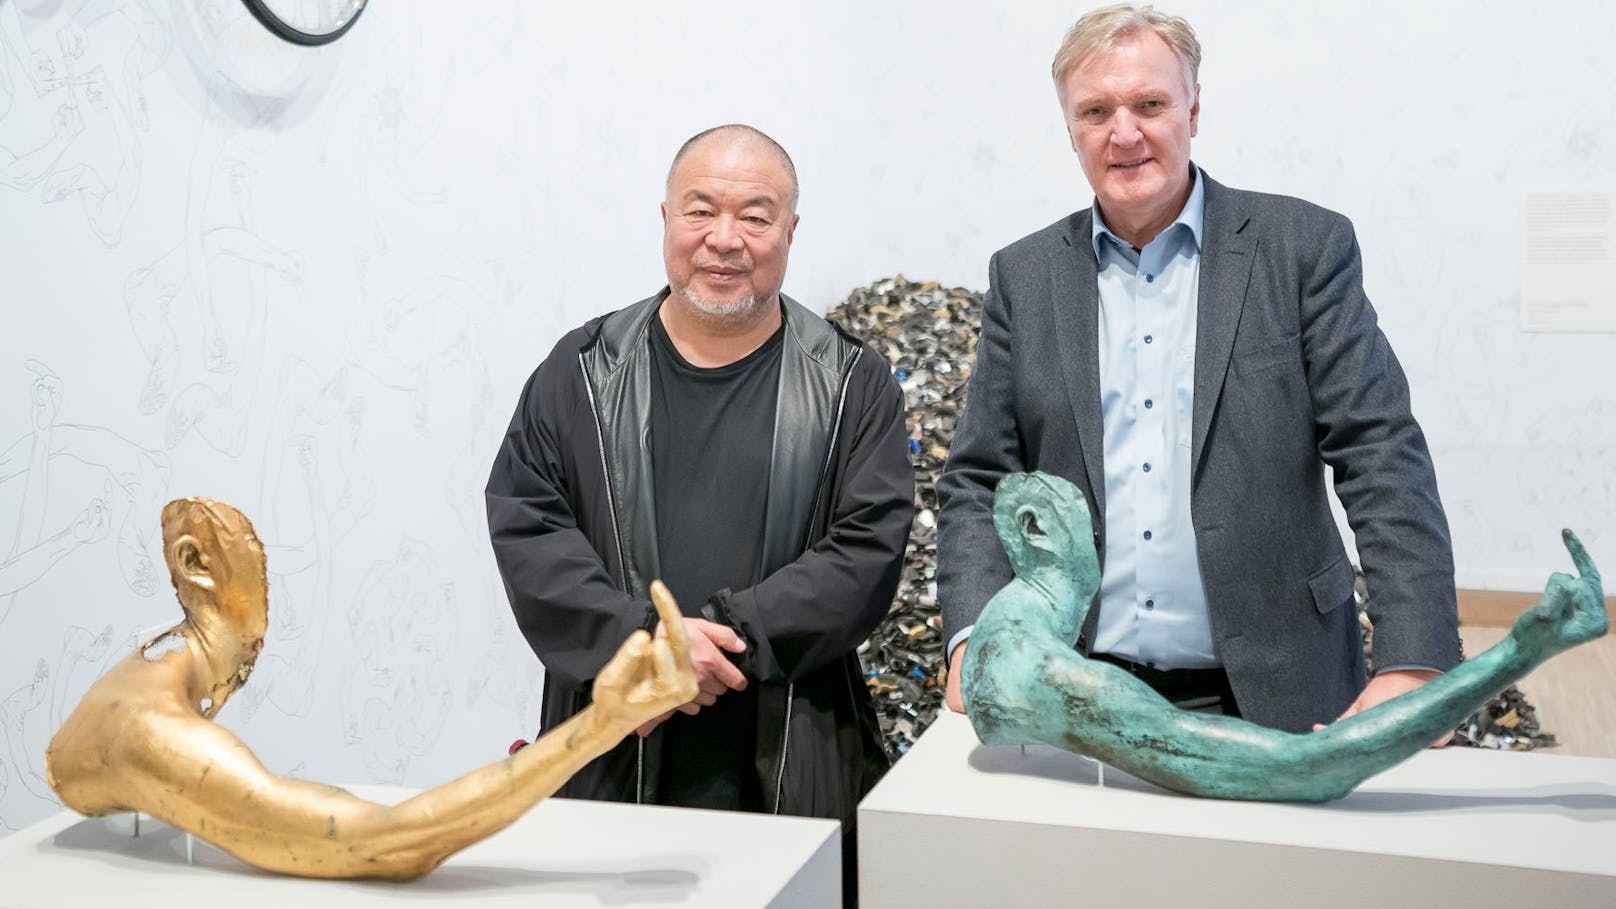 Künstler Ai Weiwei mit Albertina-Chef Klaus Albrecht Schröder vor der betroffenen goldenen Skulptur (l.) in der albertina modern.